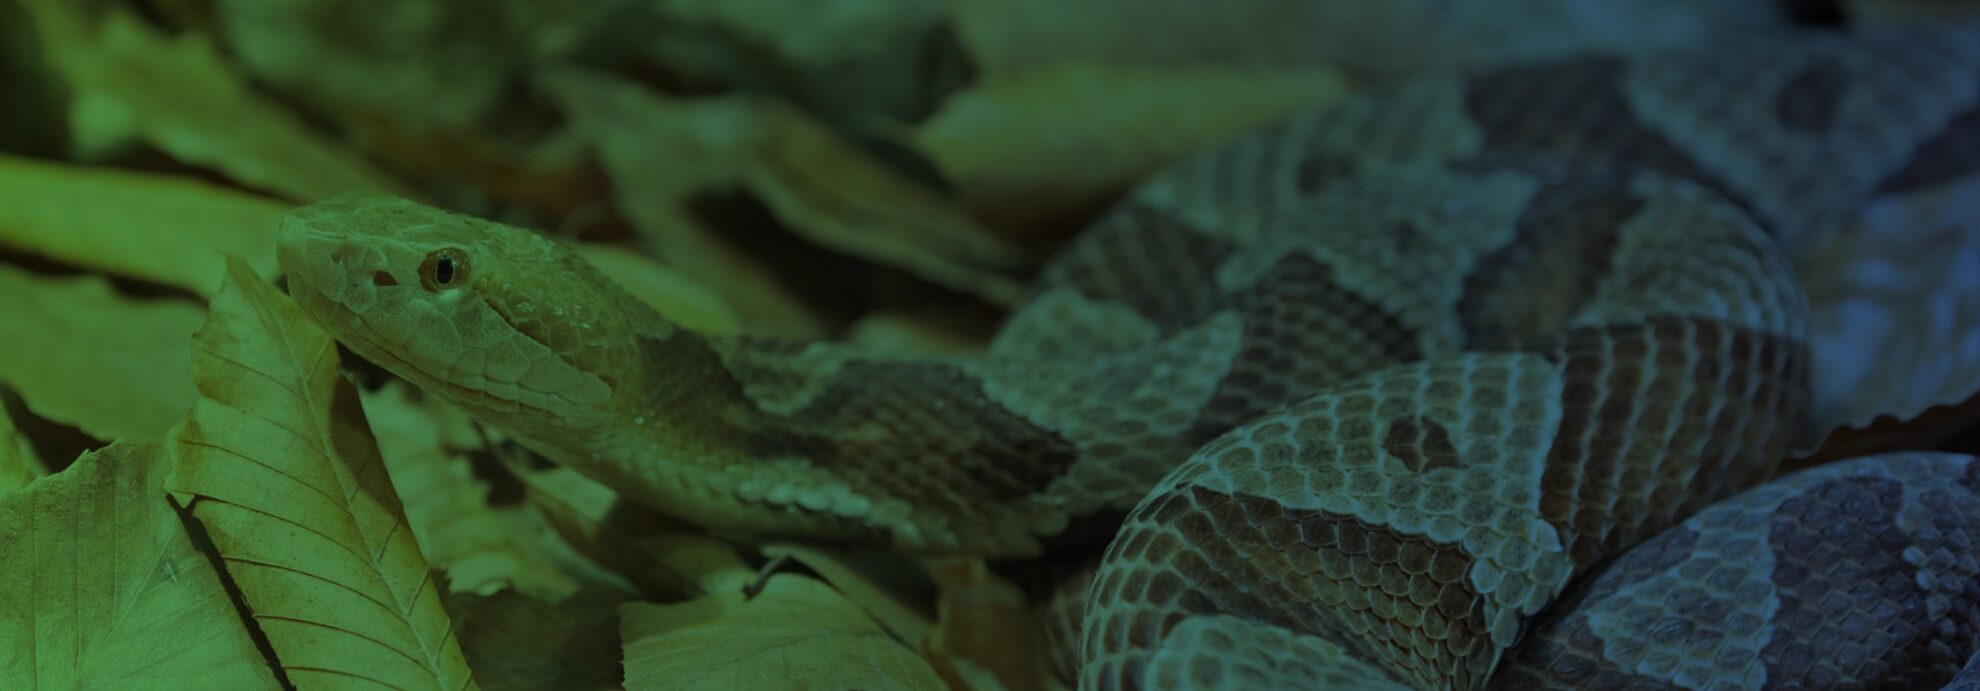 venomous pit viper found in okeechobee fl